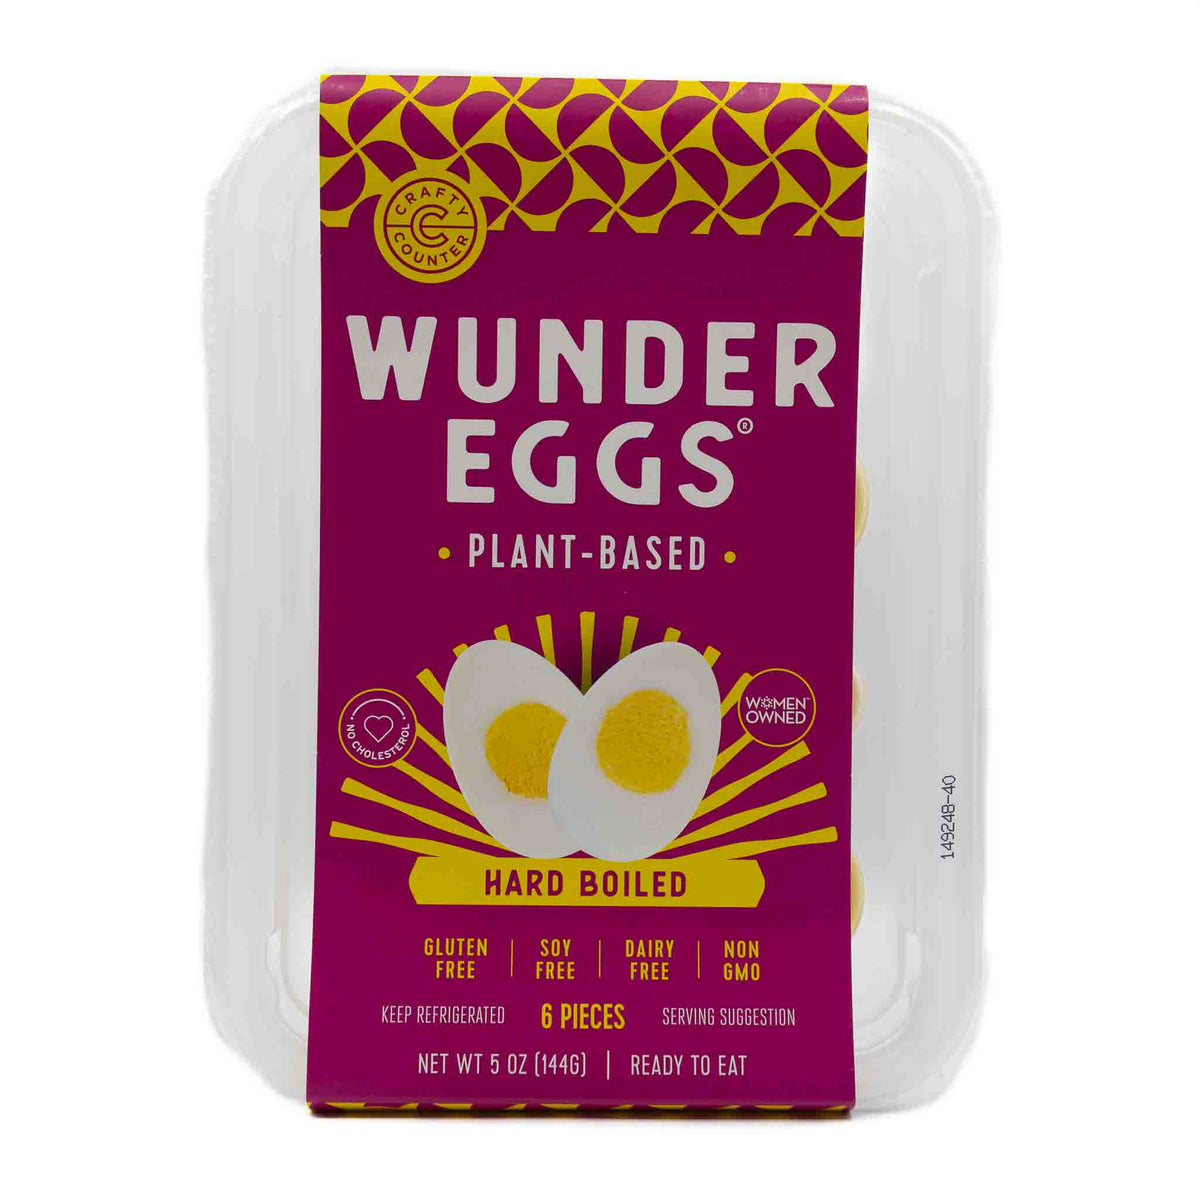 WunderEgg Hard Boiled Eggs